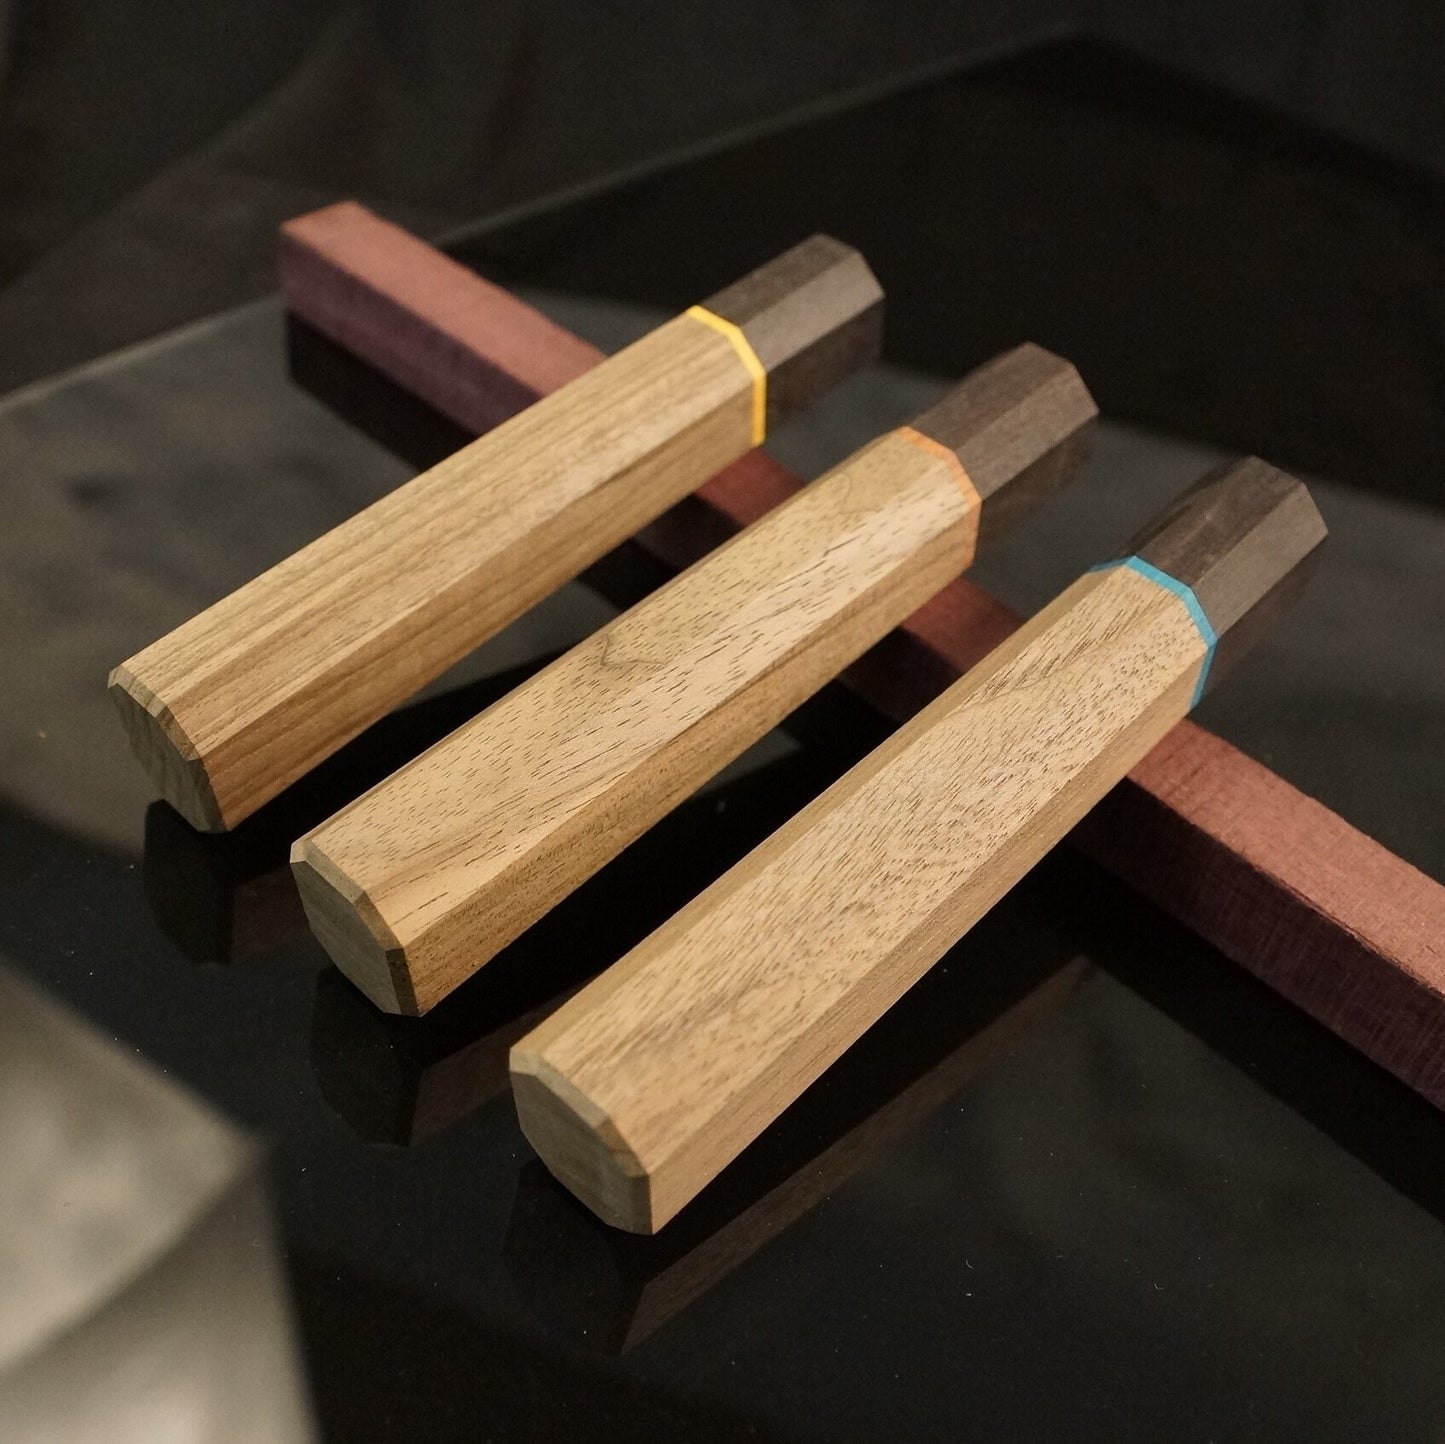 Wa-Griffrohling für Küchenmesser, japanischer Stil, exotisches Holz, aus US-Lagerbestand.